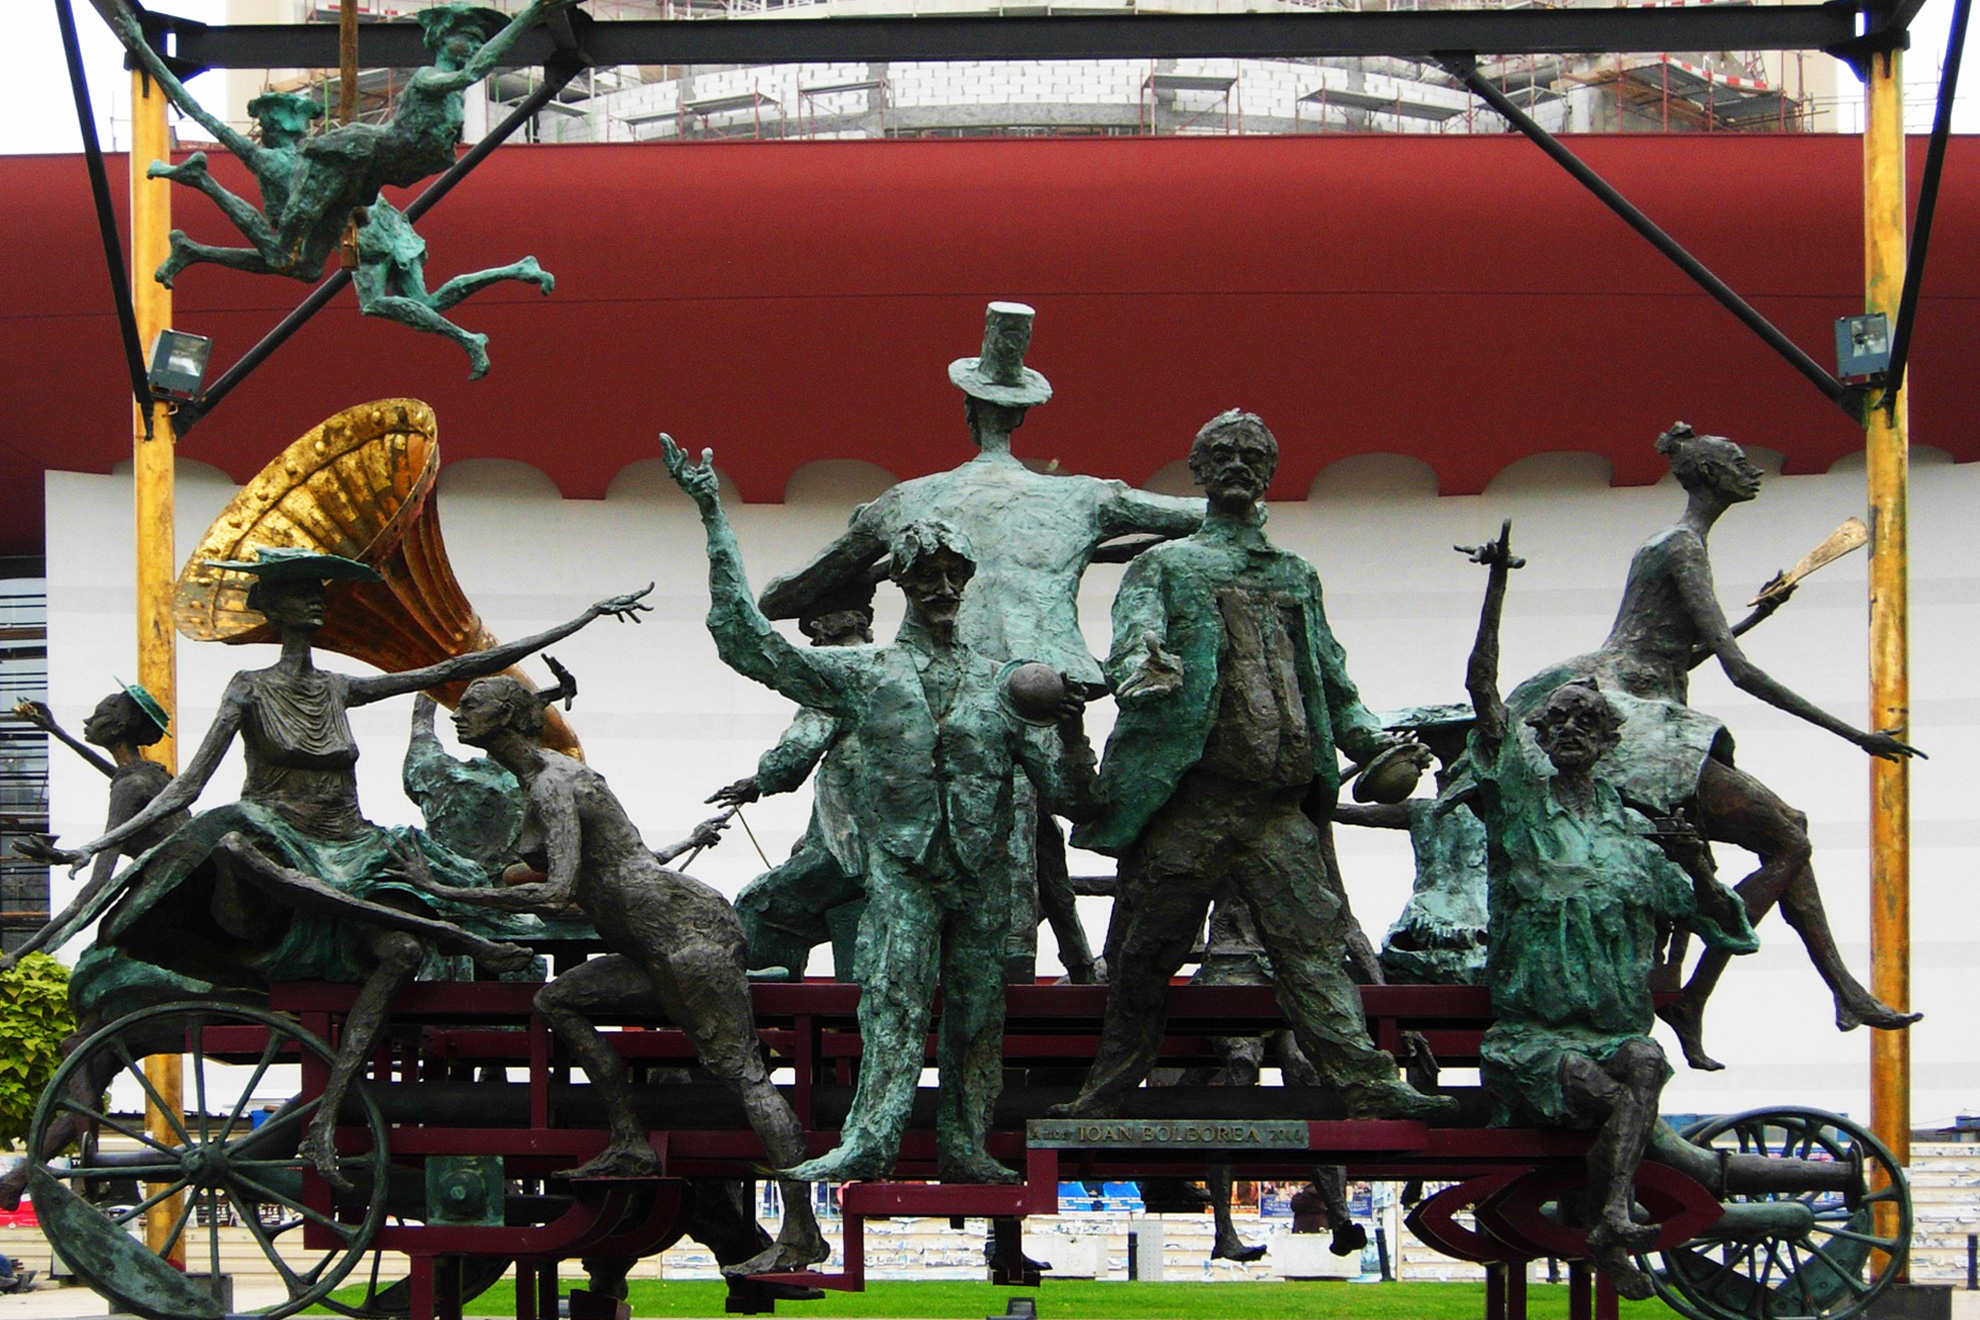 Мистерията на Дракула - Монументалния скулптурен ансамбъл - &bdquo;Каруцата с клоуните&ldquo;, известна и като&nbsp;&bdquo;Караджалеана&ldquo;, разположена пред&nbsp;Националния театър &bdquo;Йон Лука Караджале&ldquo;, Букурещ, Румъния - Caragealiana sculpture in front of National Theatre, Bucharest, Romania